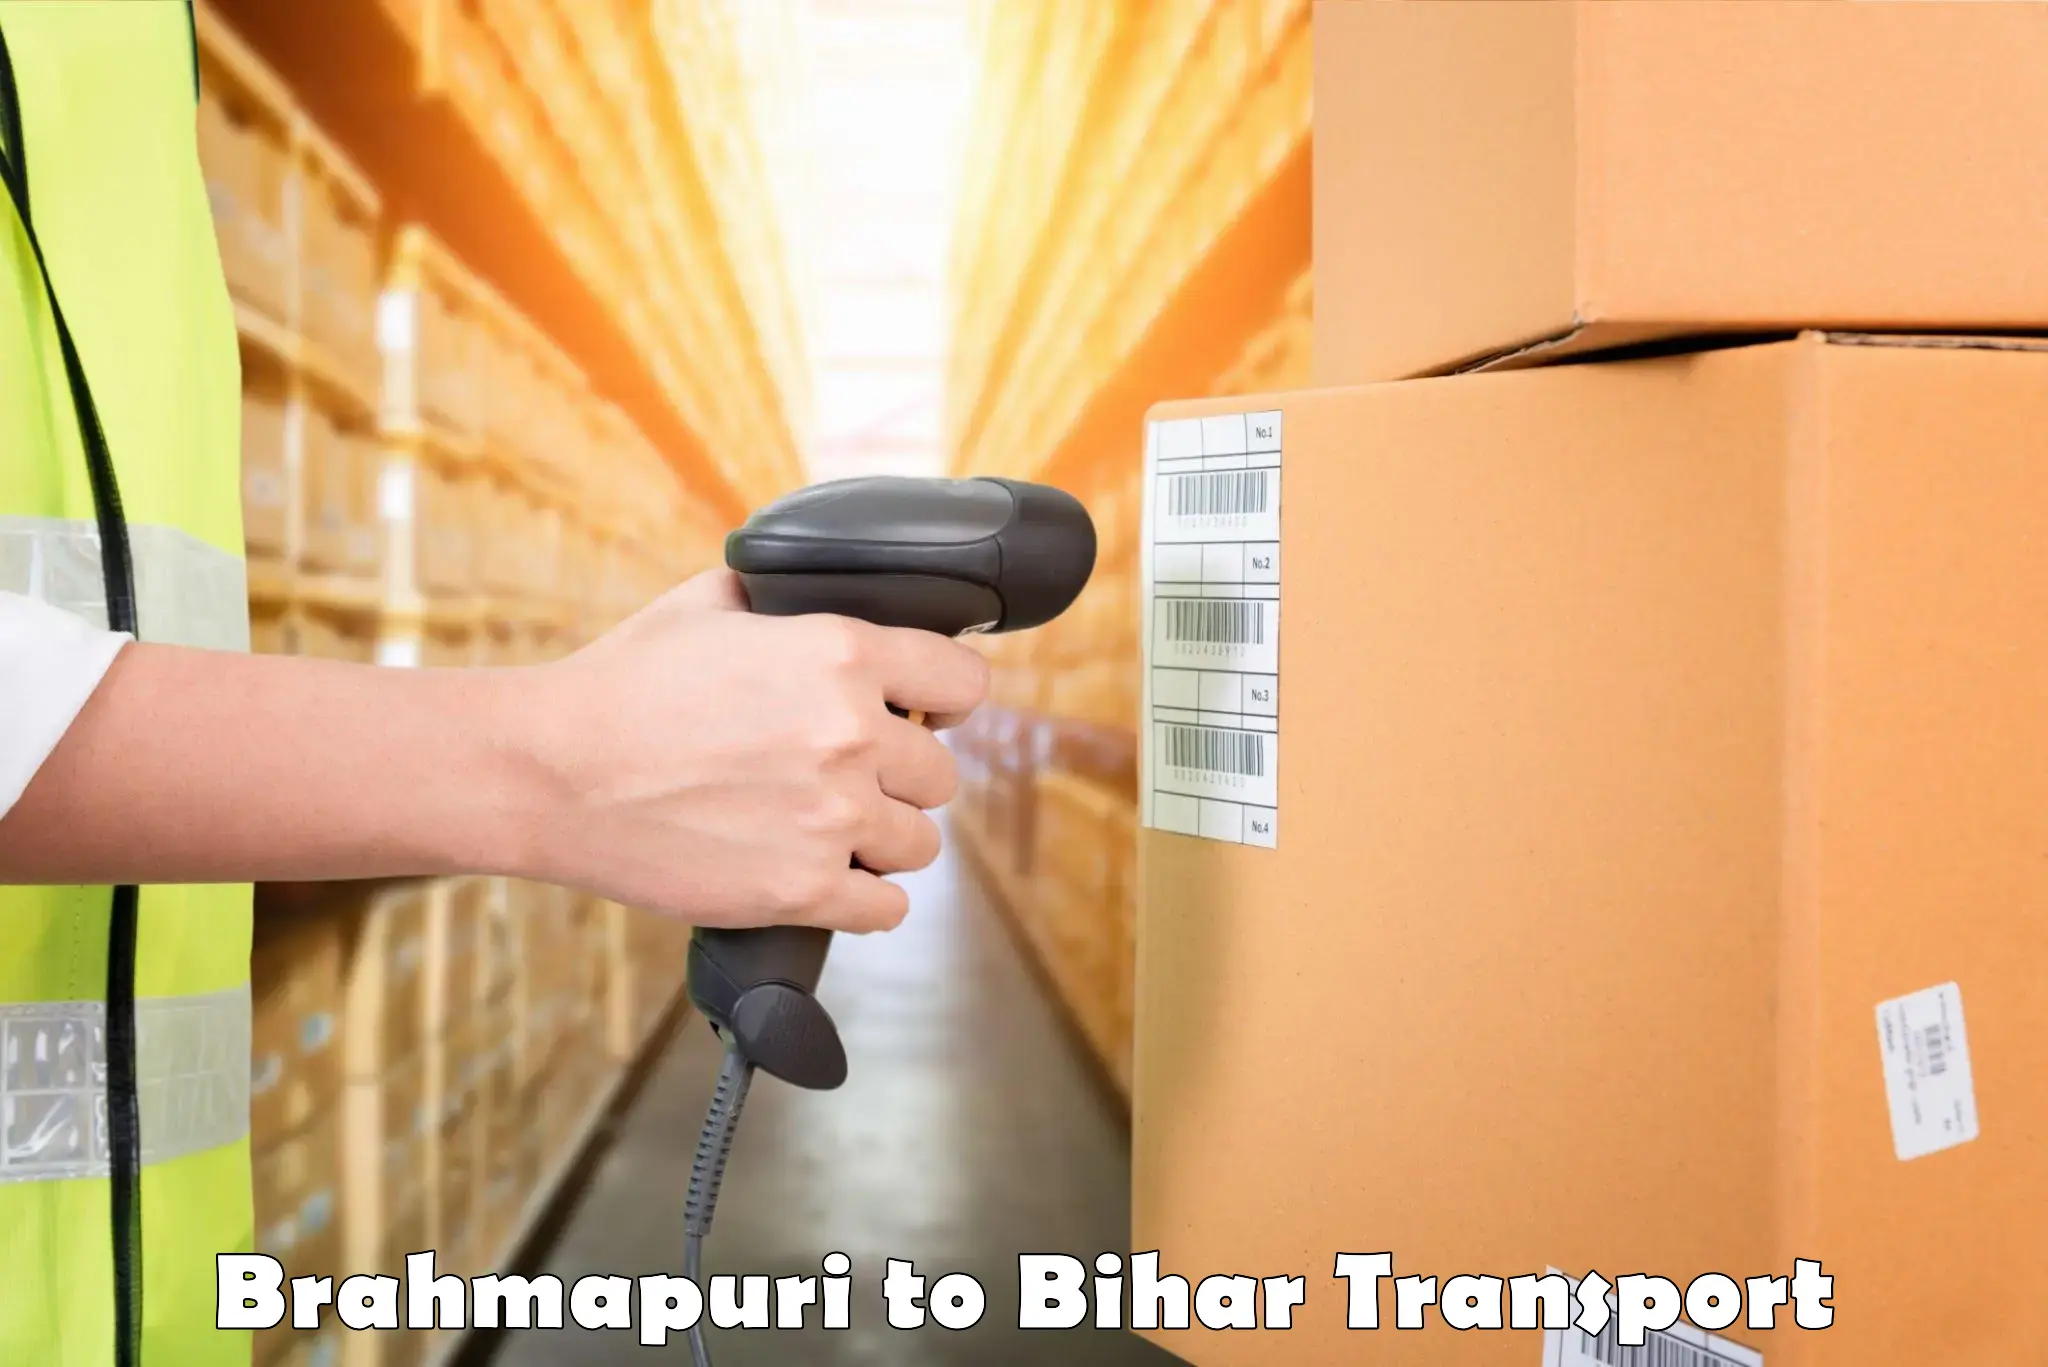 Nearby transport service Brahmapuri to Minapur